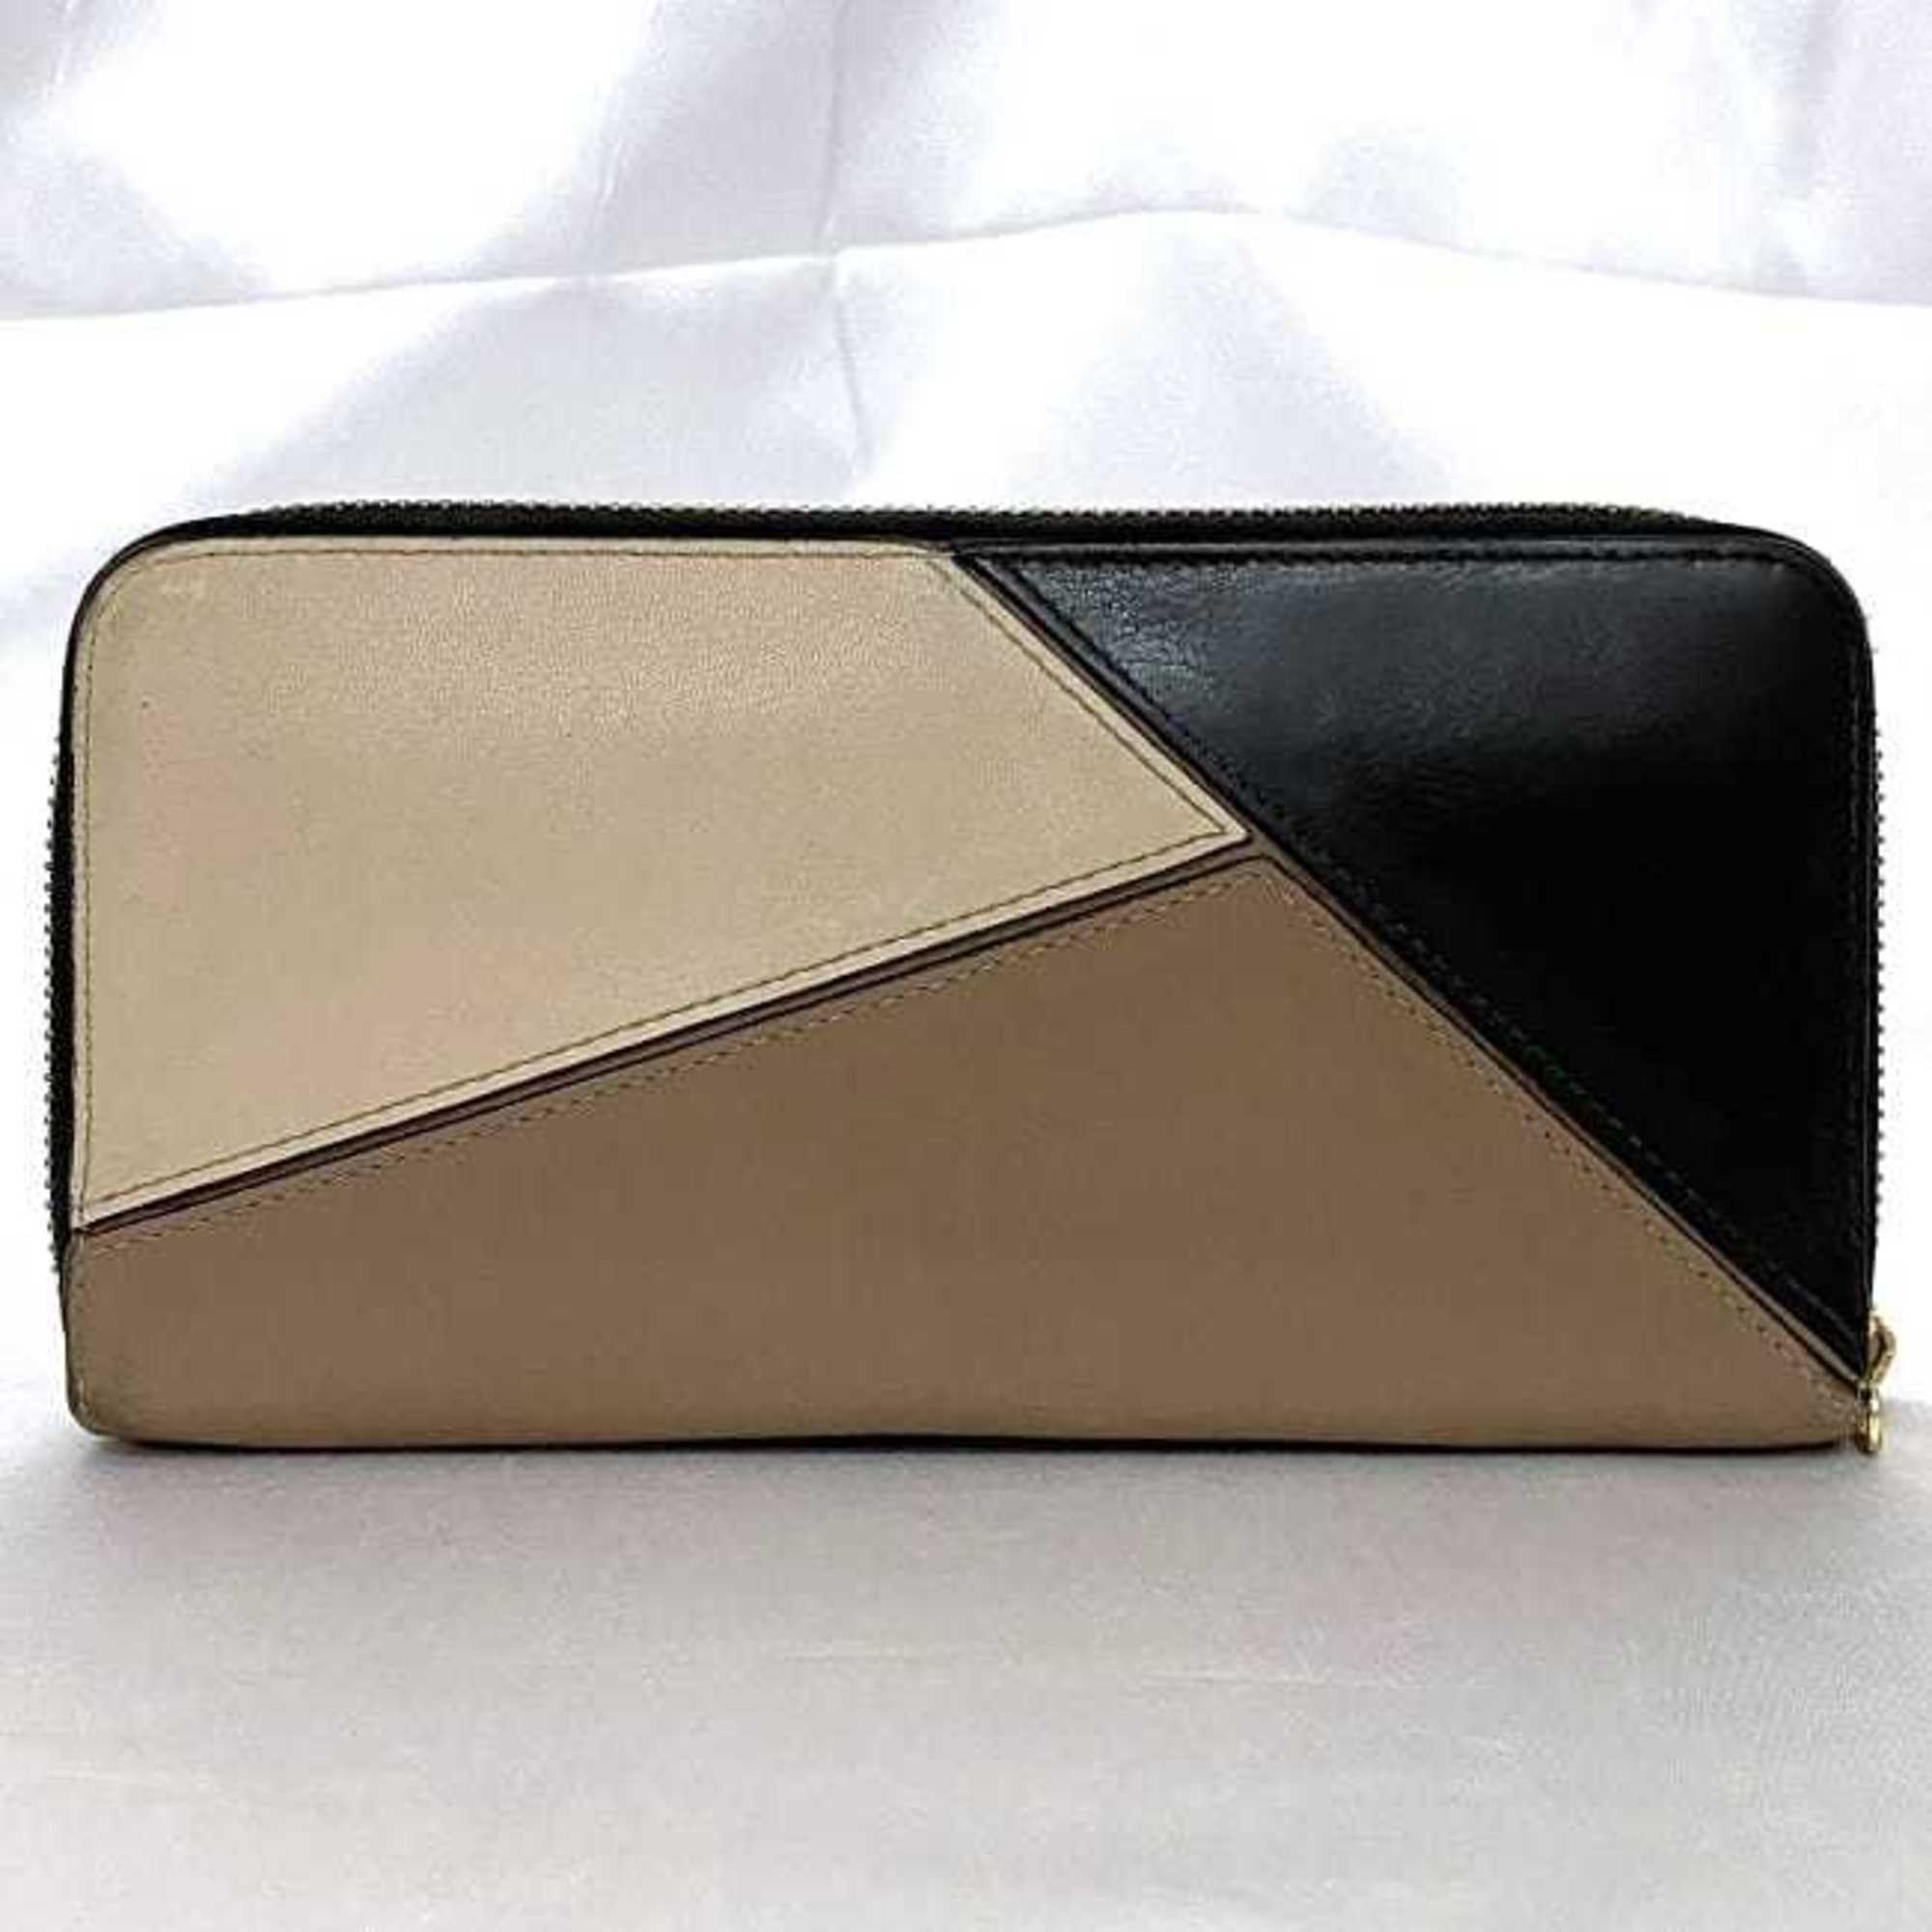 LOEWE Round Long Wallet Beige Brown Black Puzzle ec-20421 Leather Anagram Women's